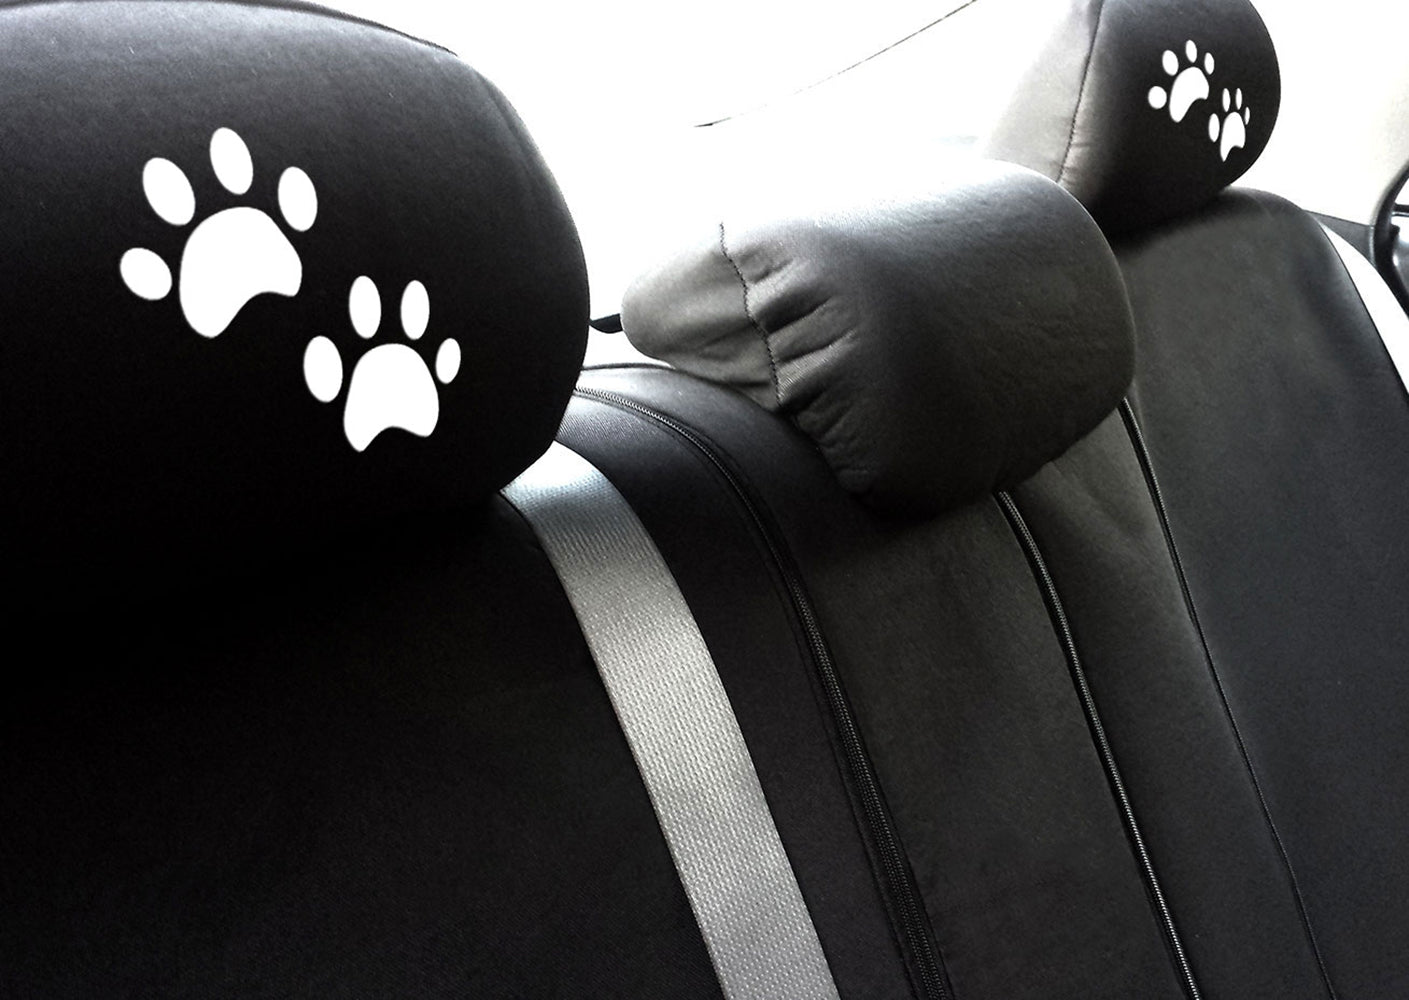 Embroidery White Paw Logo Design Auto Truck SUV Car Seat Headrest Cover Accessory 1 Piece - Yupbizauto